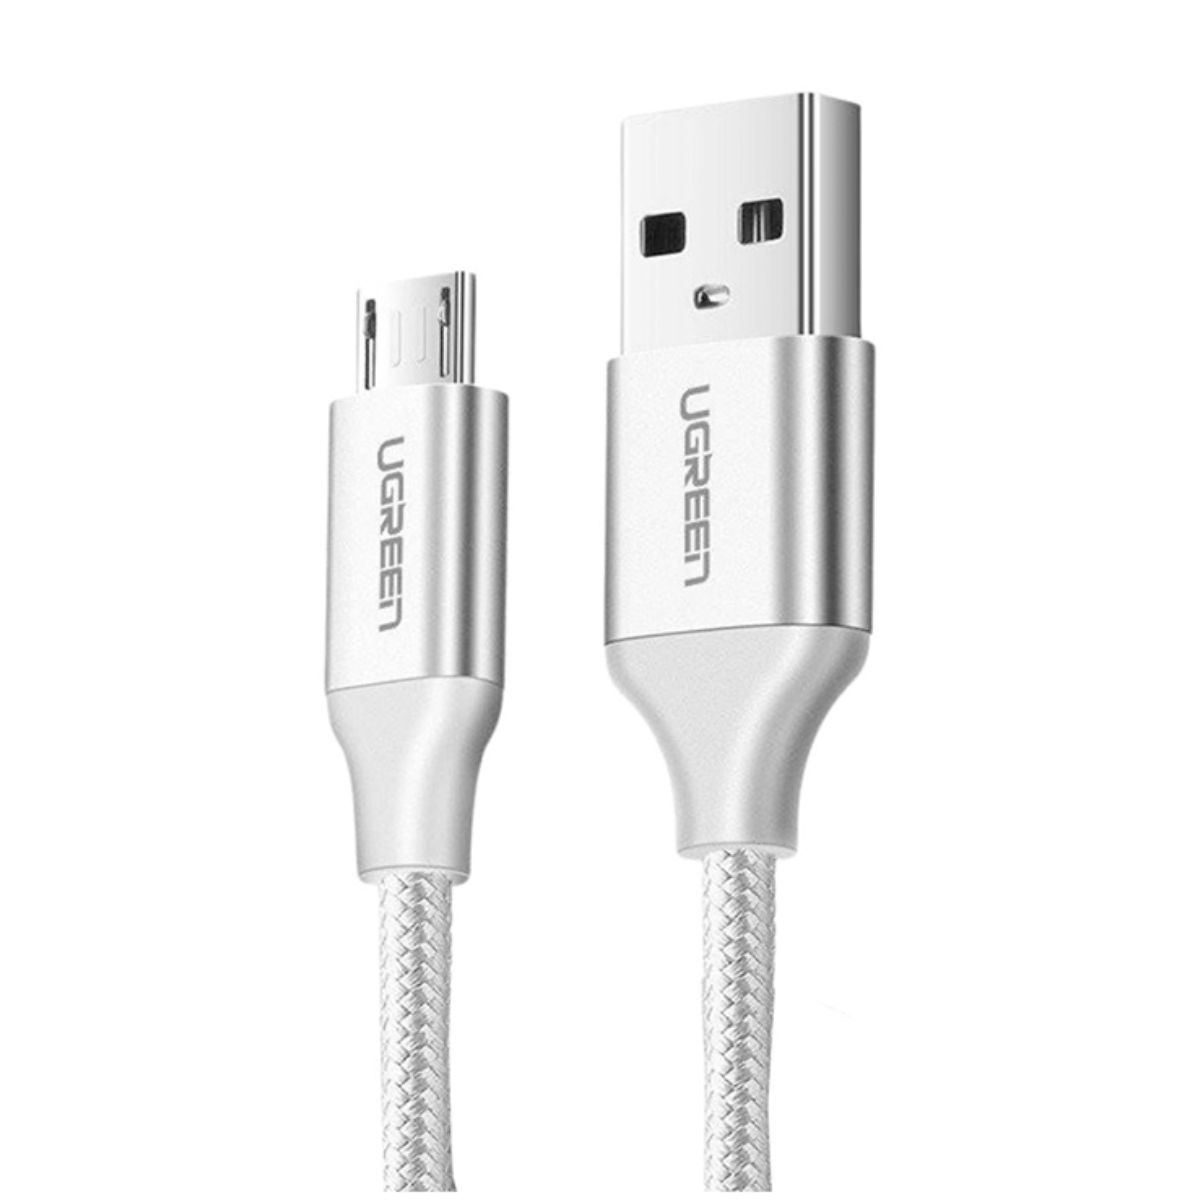 Cáp sạc USB đến Micro USB Ugreen 60142 US289 chiều dài 1.5m, màu trắng